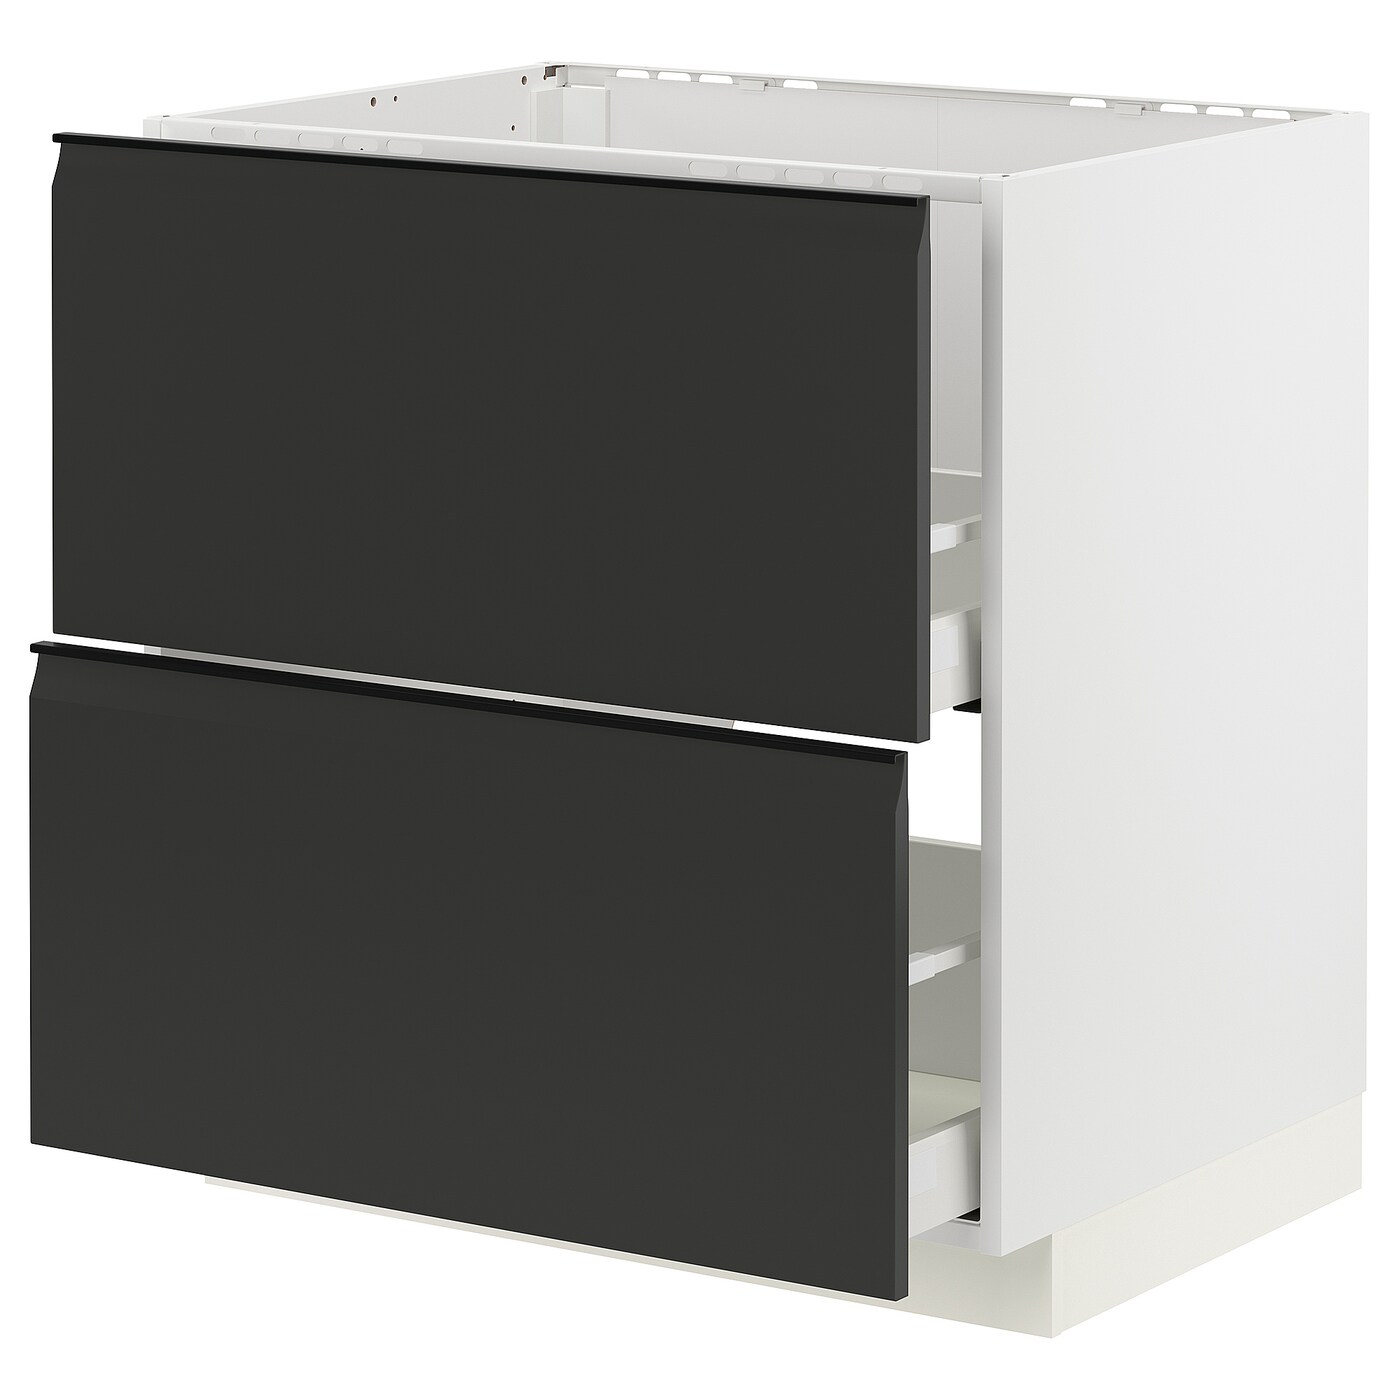 Напольный кухонный шкаф  - IKEA METOD MAXIMERA, 88x62x80см, белый/черный, МЕТОД МАКСИМЕРА ИКЕА